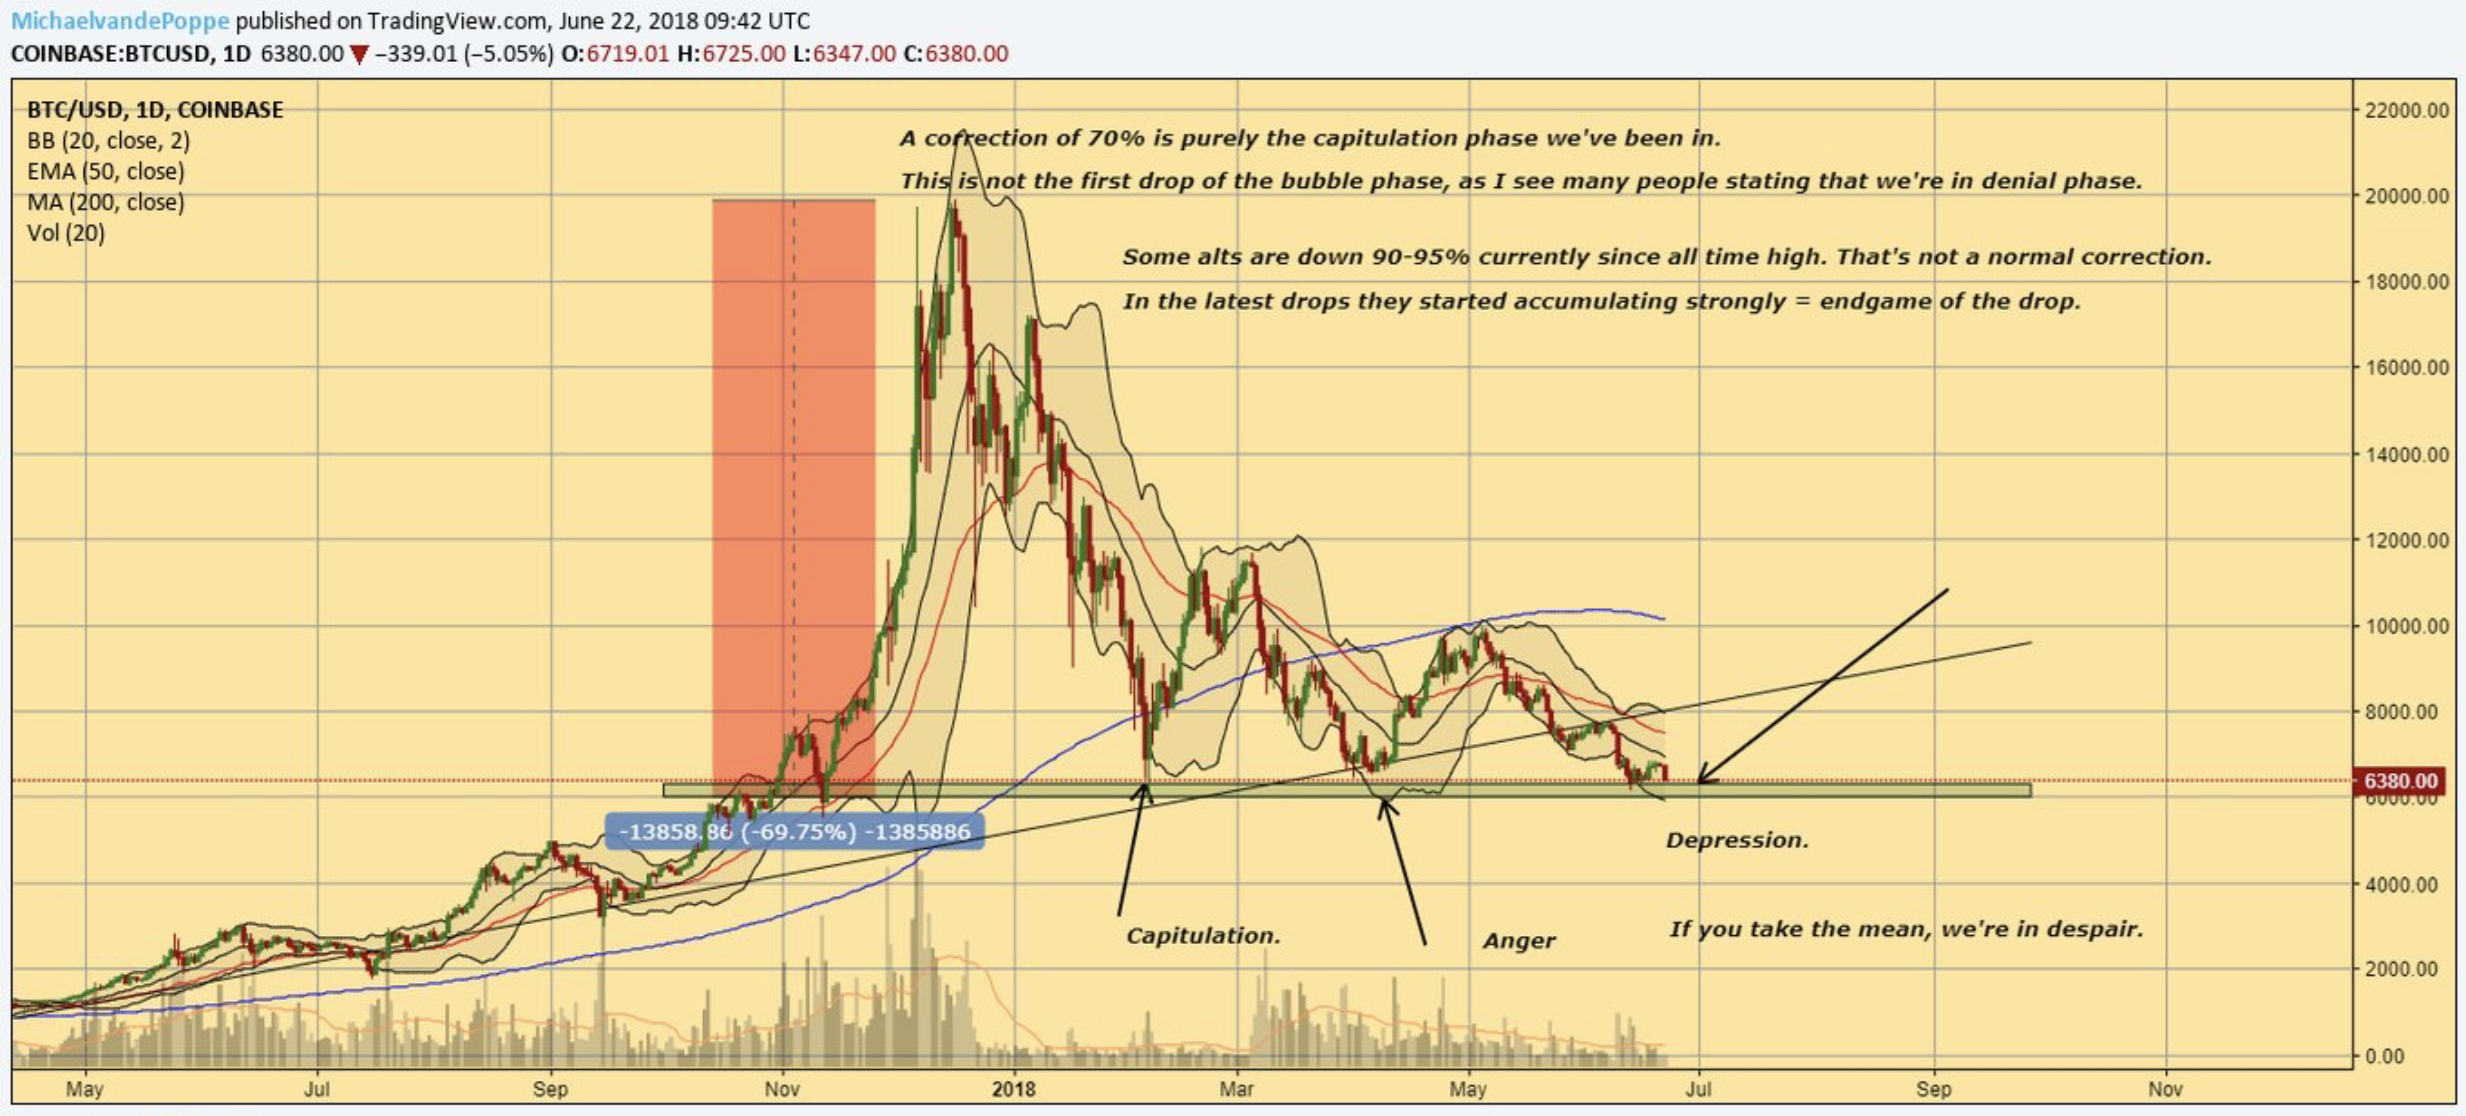 további információ a bitcoin tradingről a bitcoin jelenlegi piaci ára